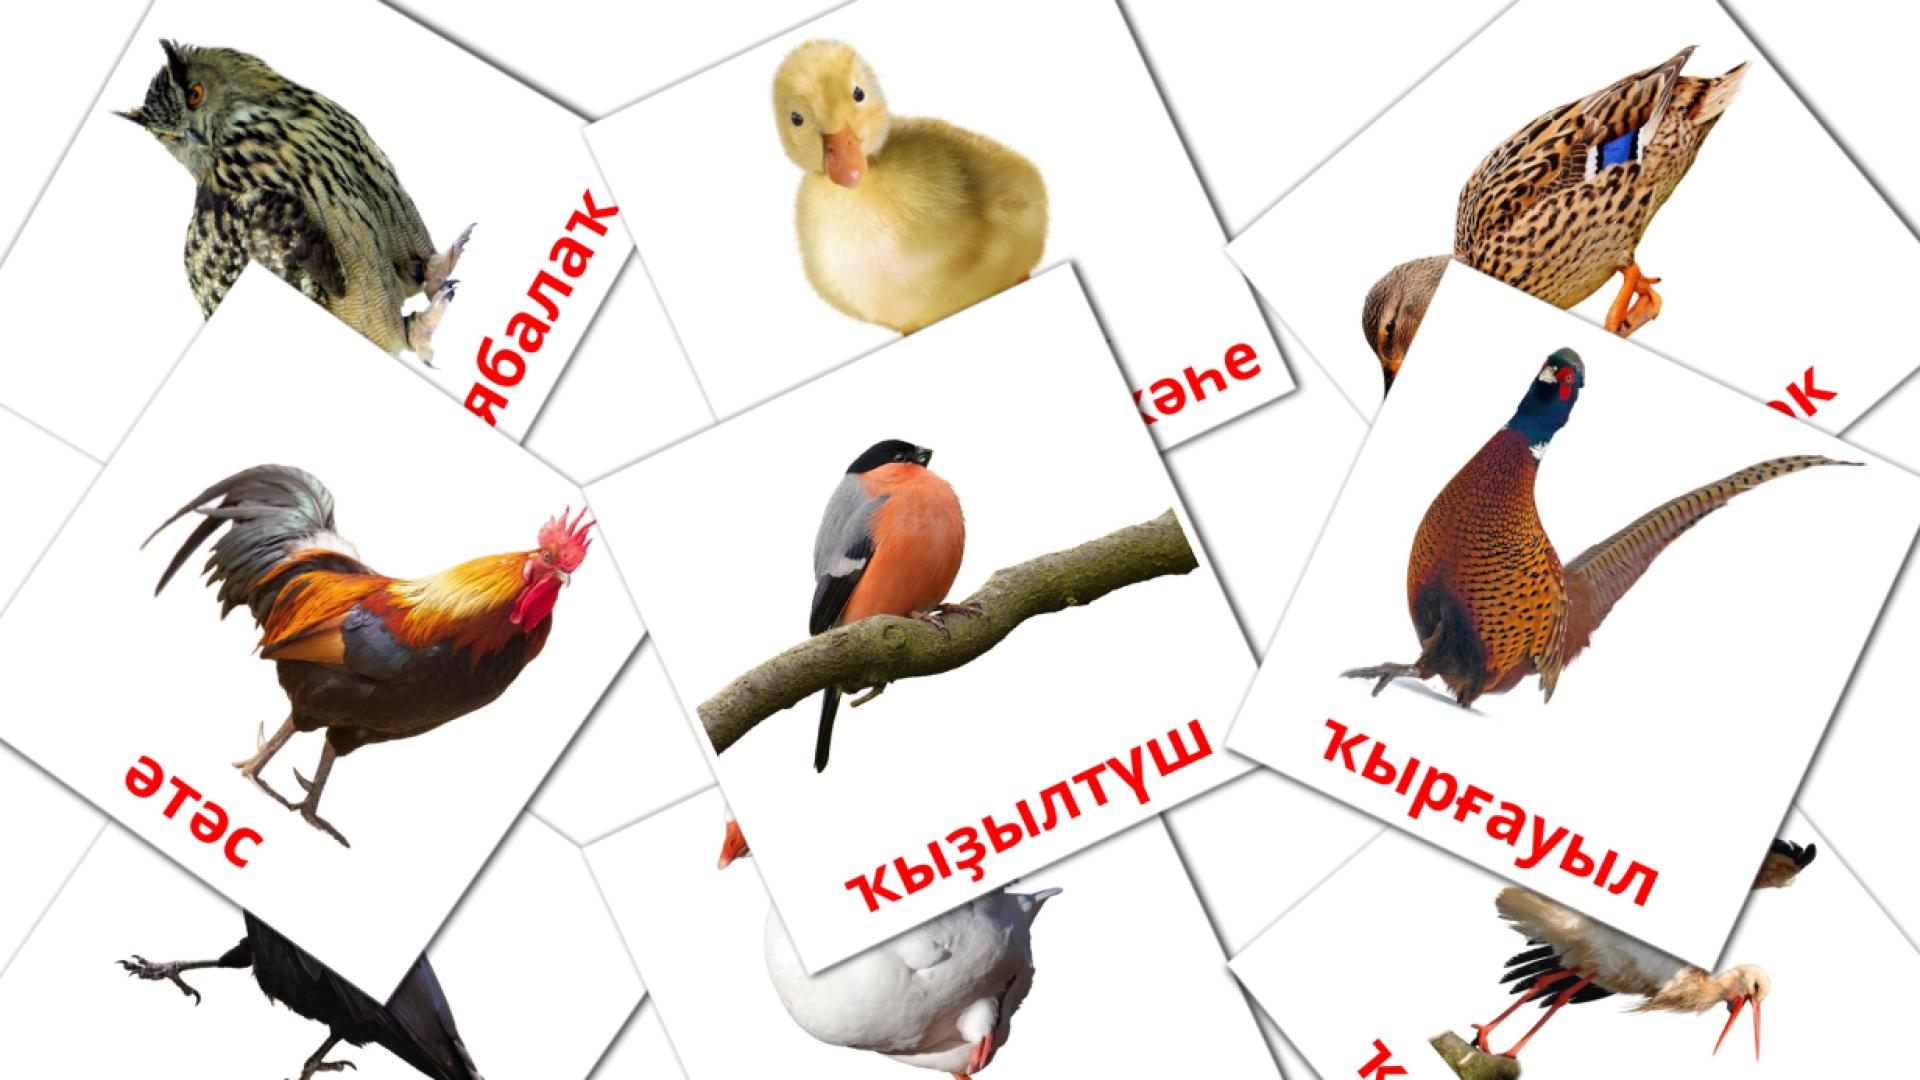 Карточки Домана Ҡоштар на башкирском языке